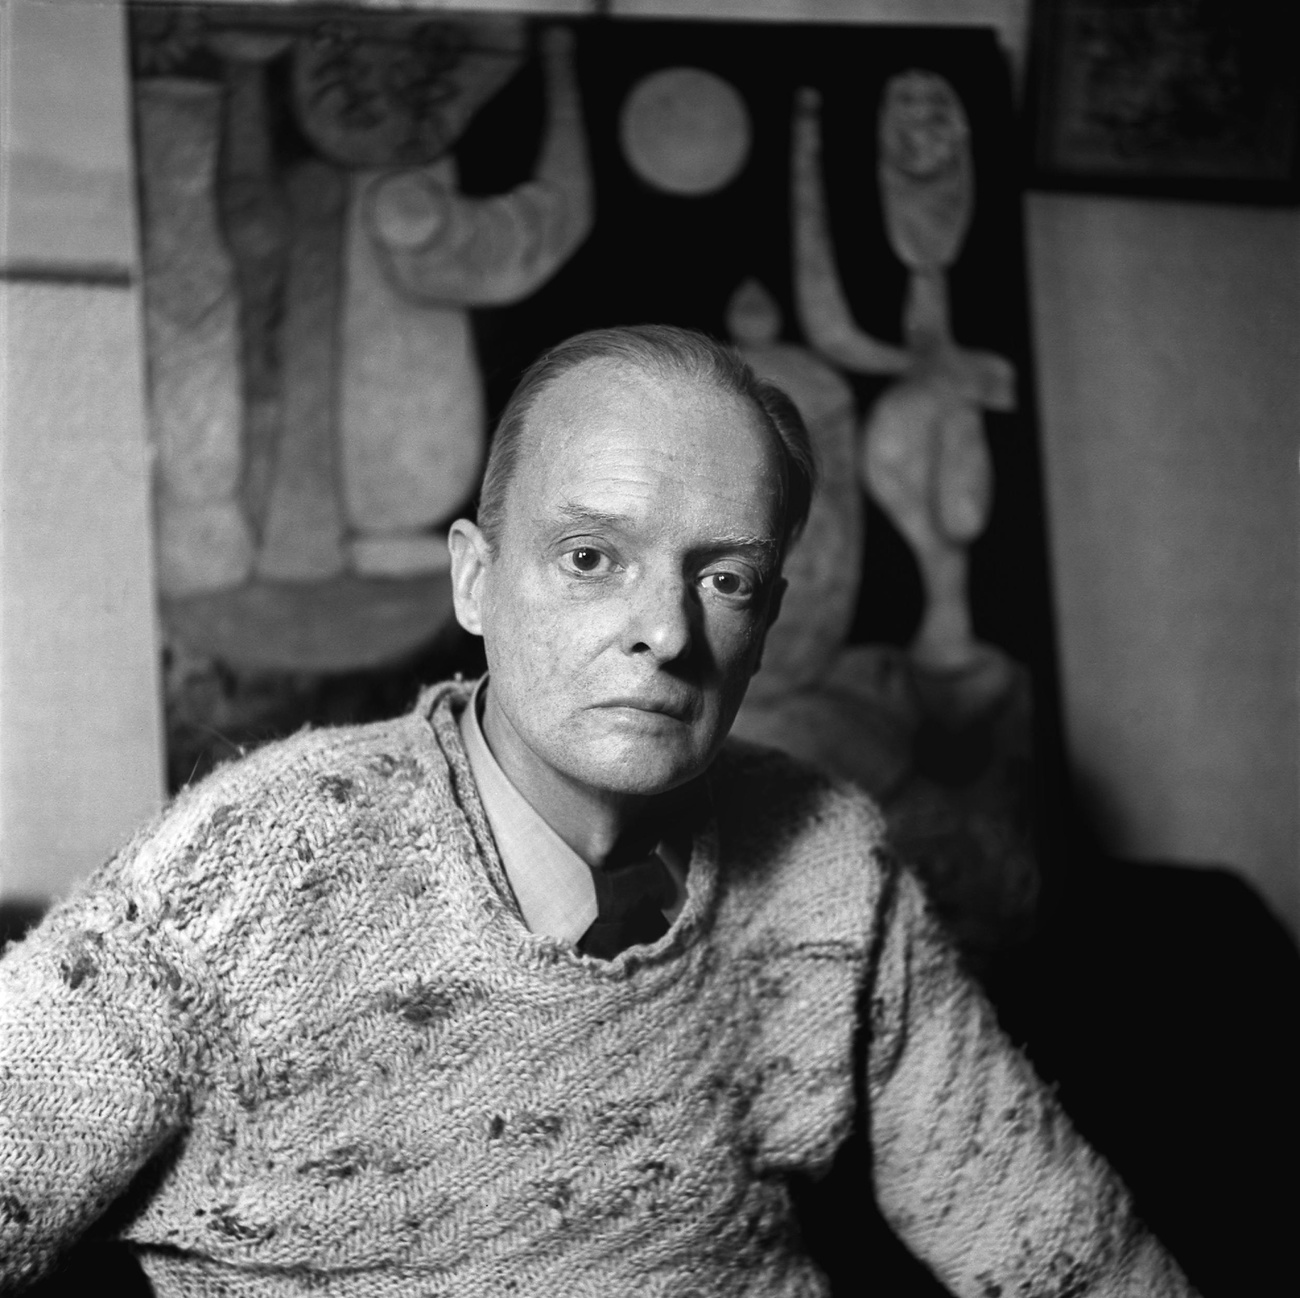 Der Maler Paul Klee